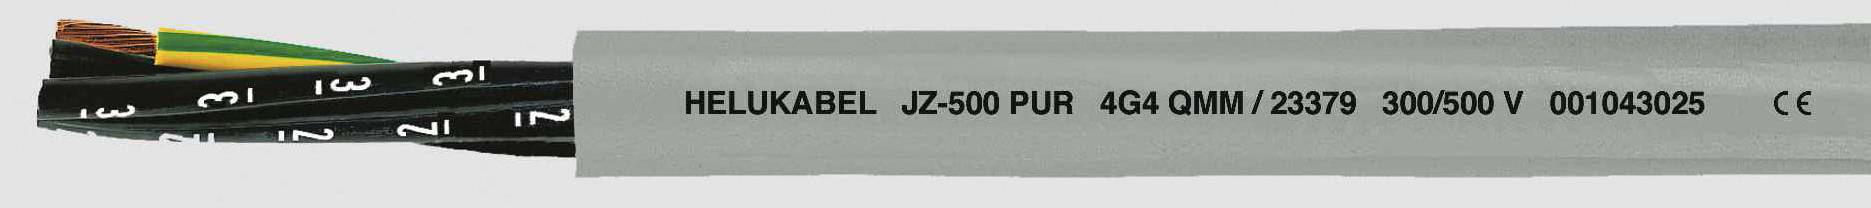 HELUKABEL JZ-500 PUR Steuerleitung 3 G 0.75 mm² Grau 23330-1000 1000 m